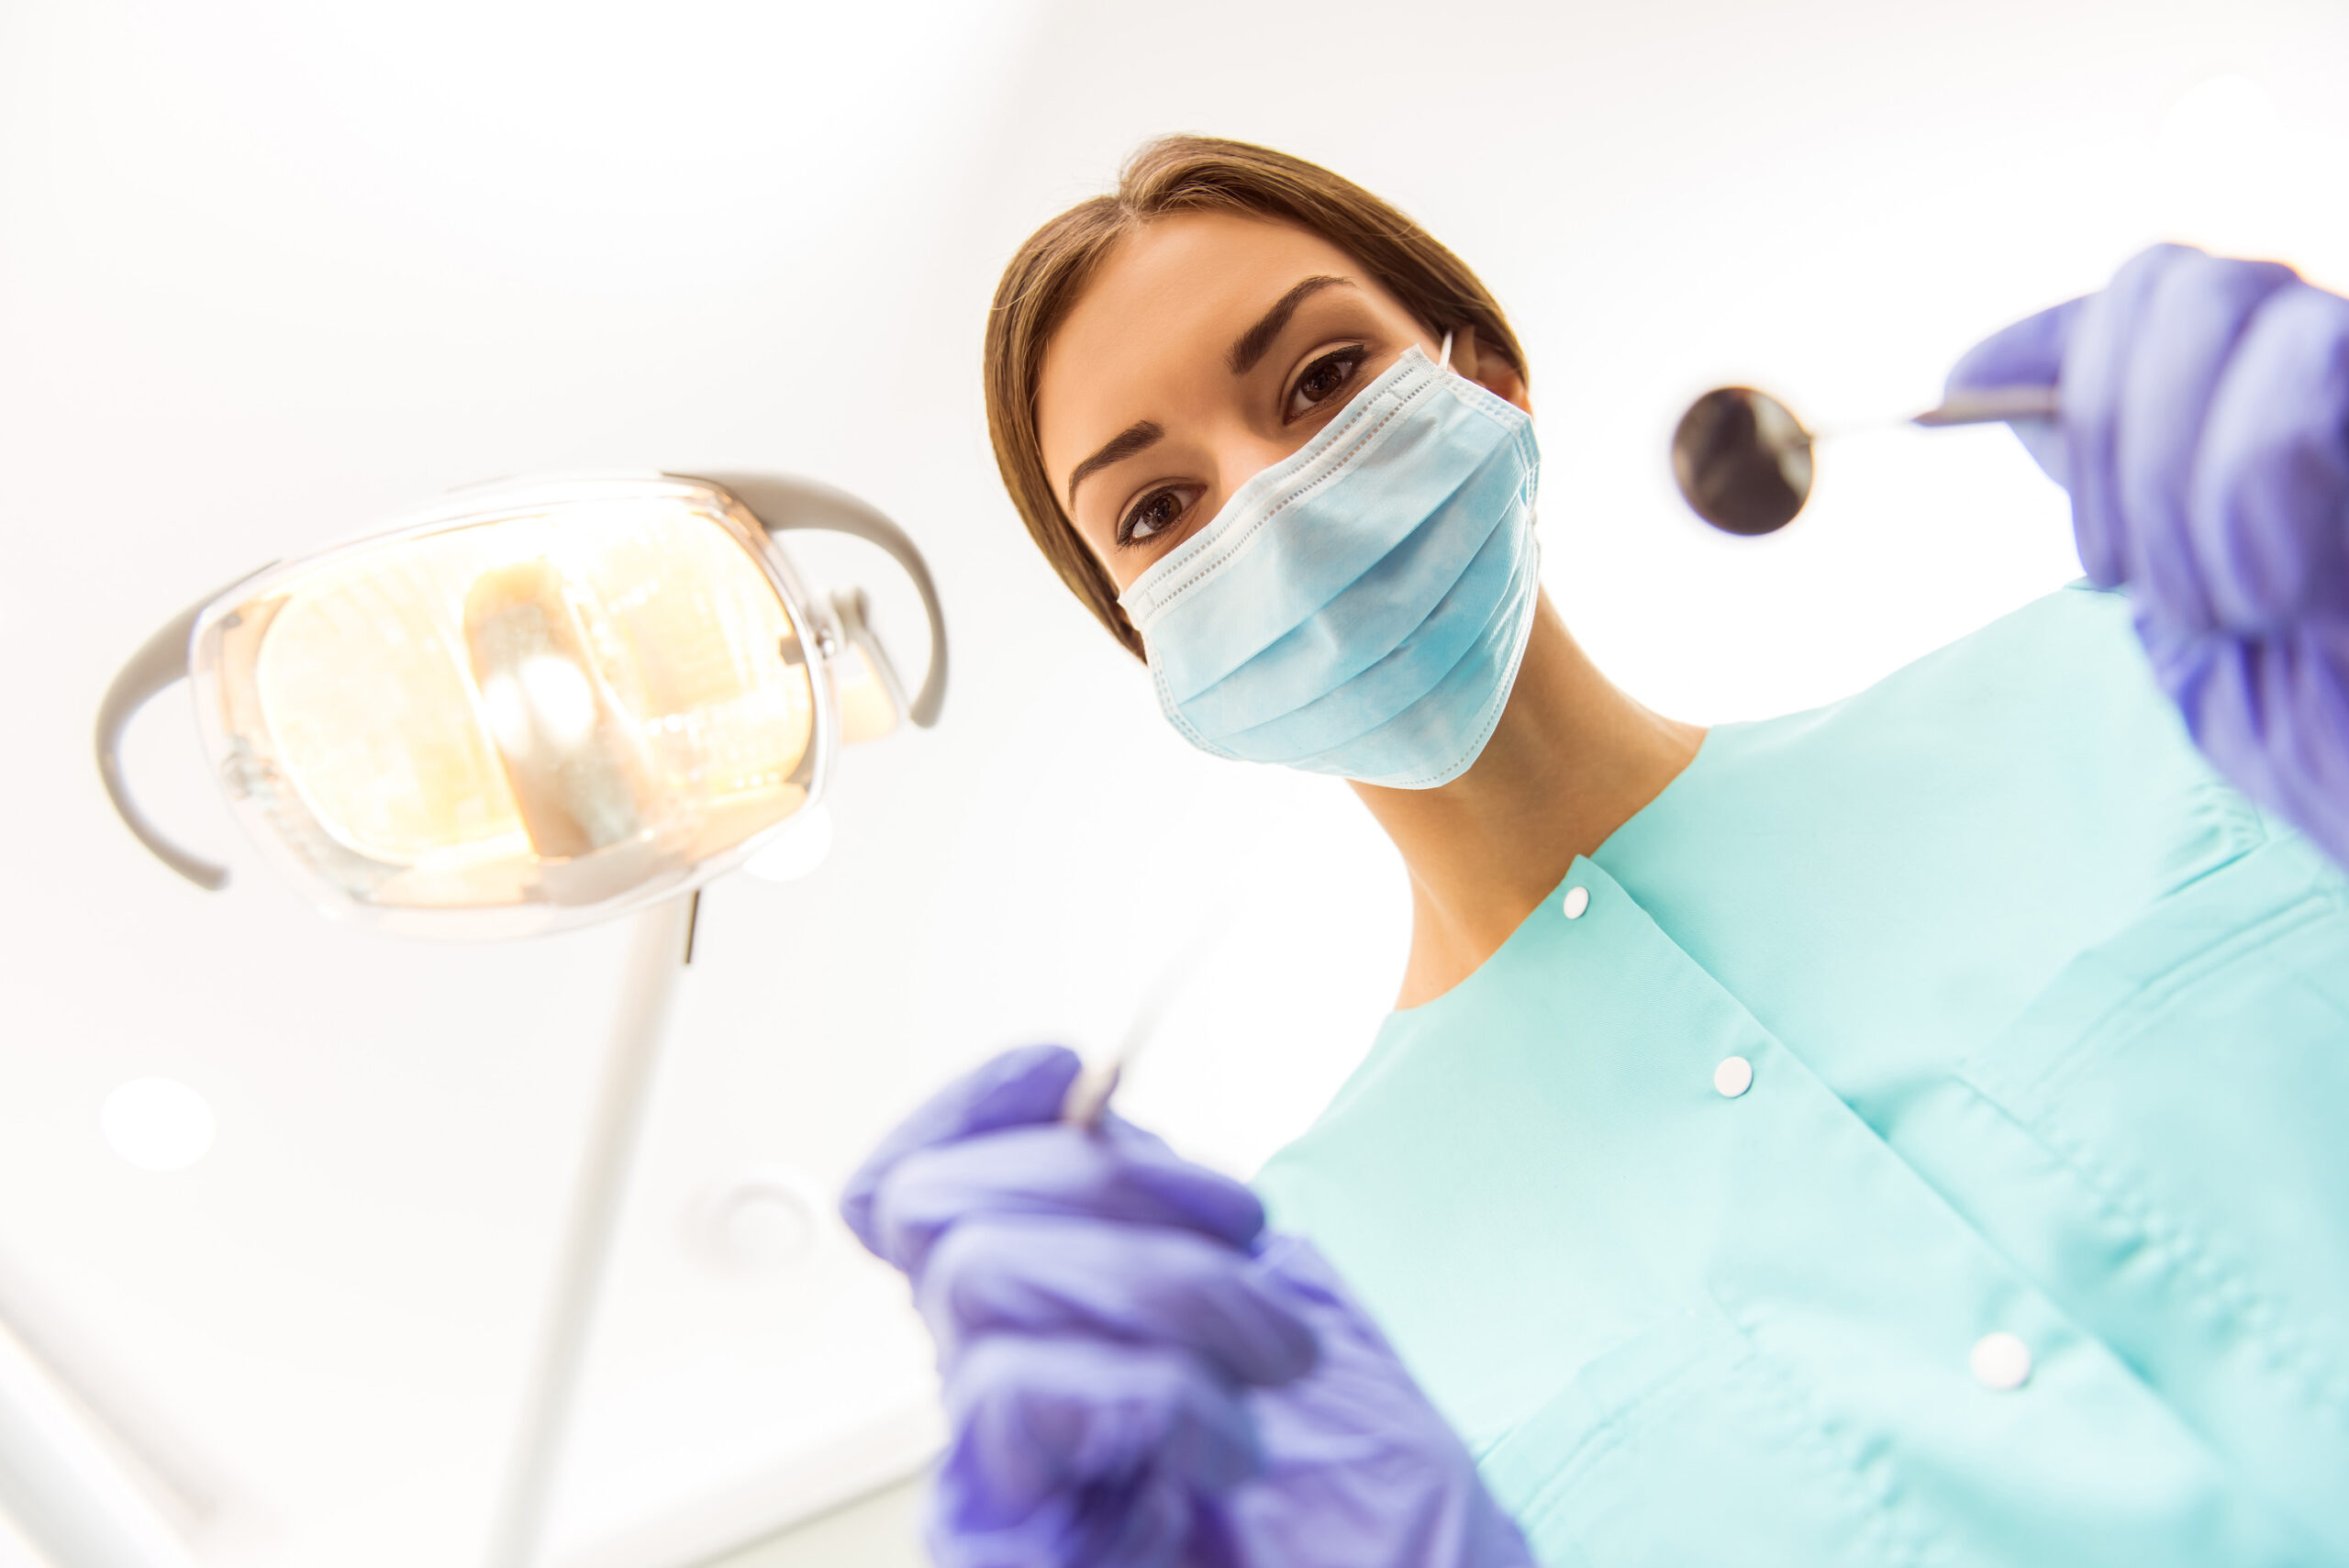 advanced gum disease treatments achieving a healthier smile